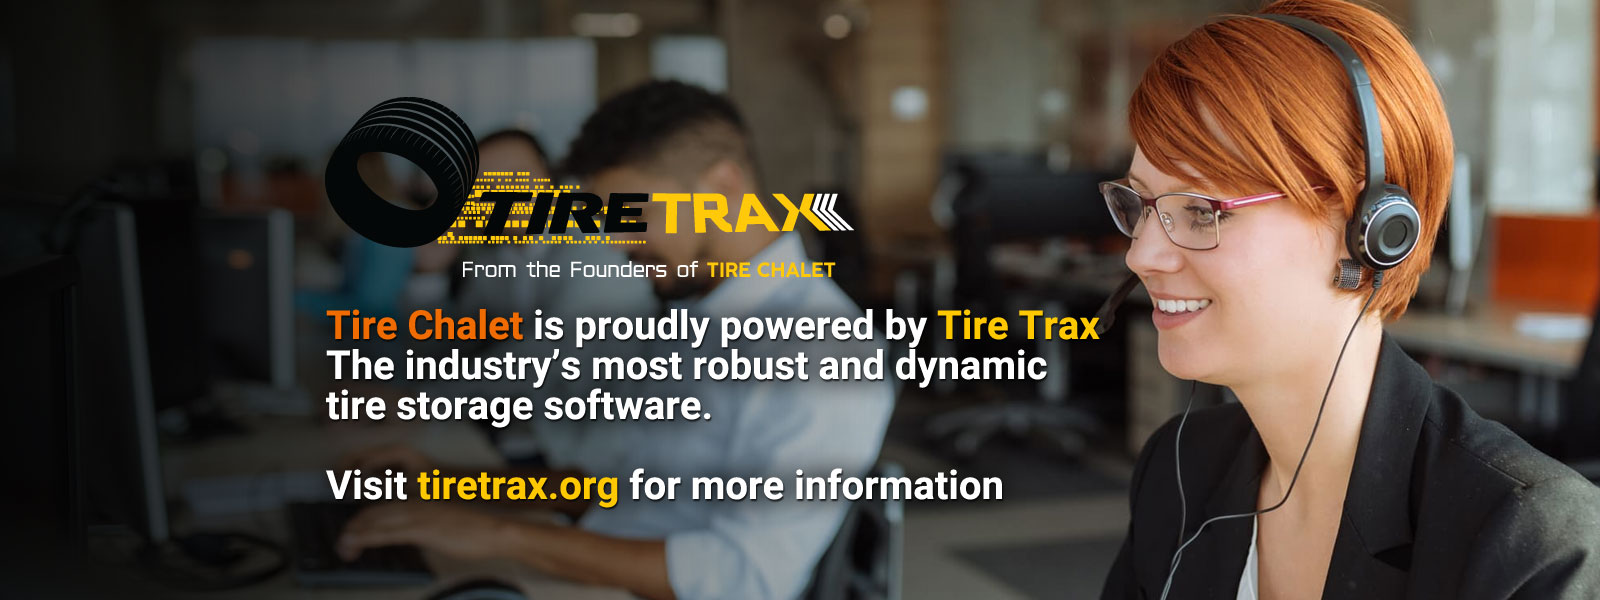 Tire Trax